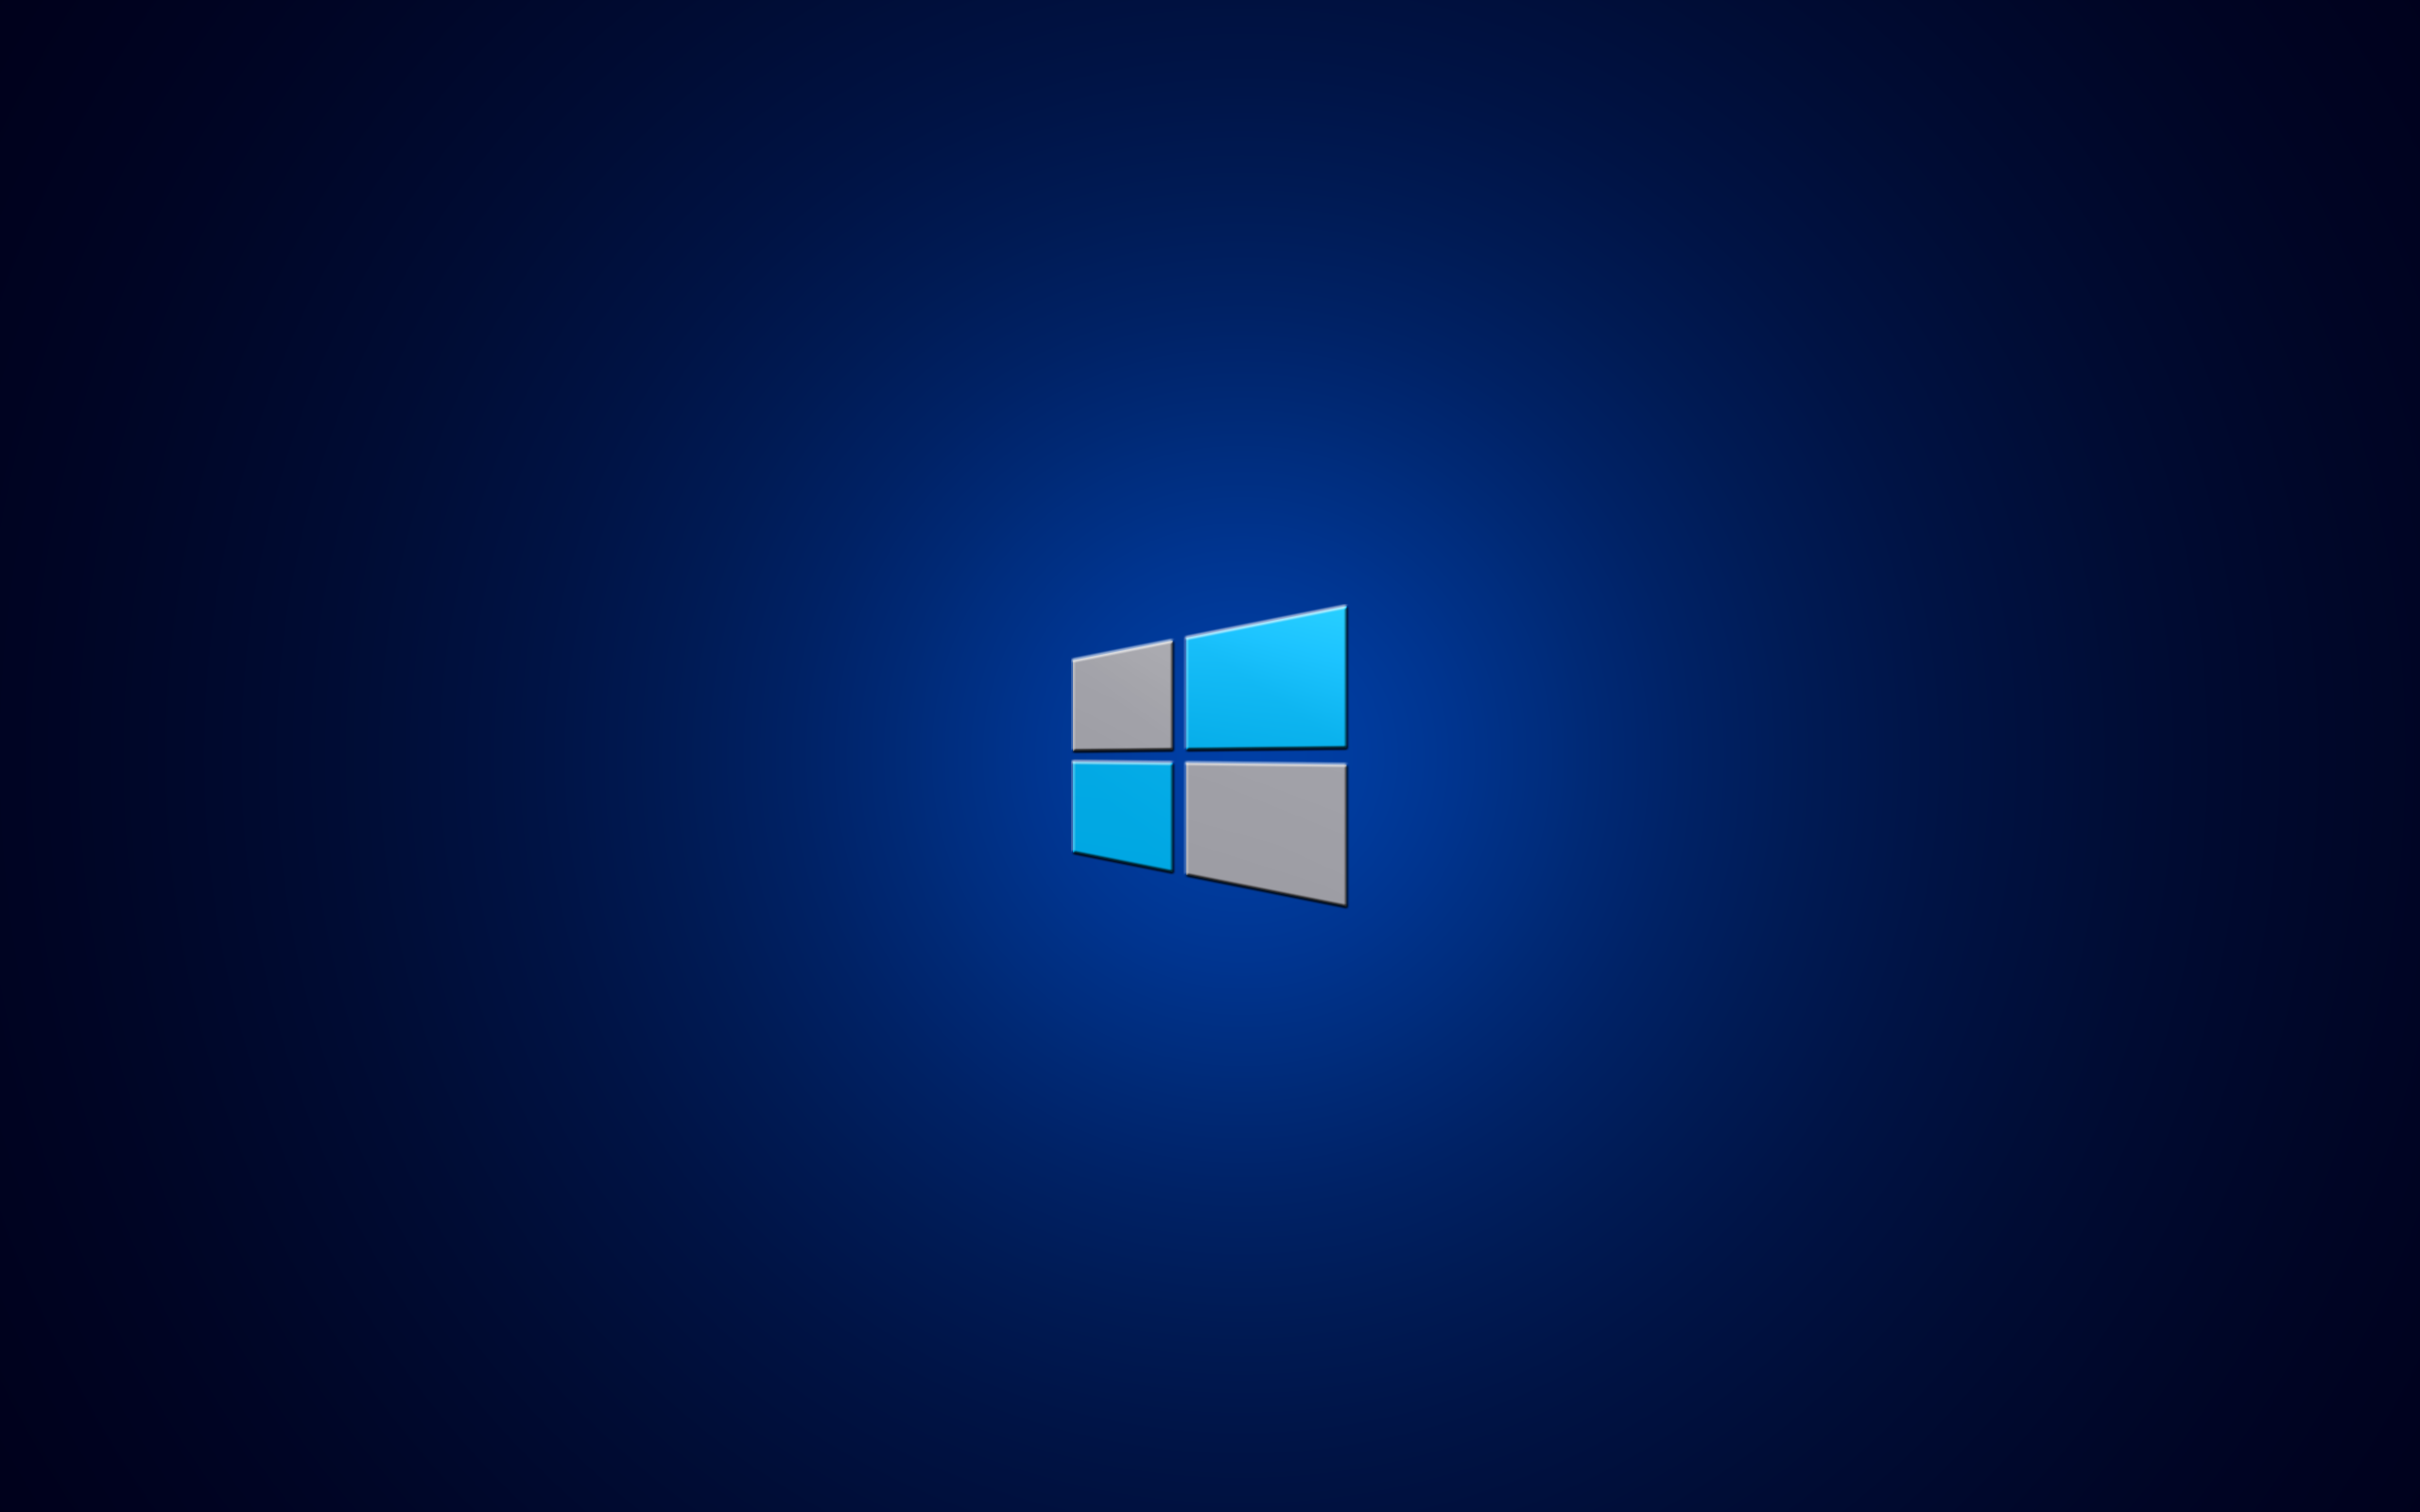 The new Windows 8 logo wallpaper 2560x1600 1855 WallpaperUP